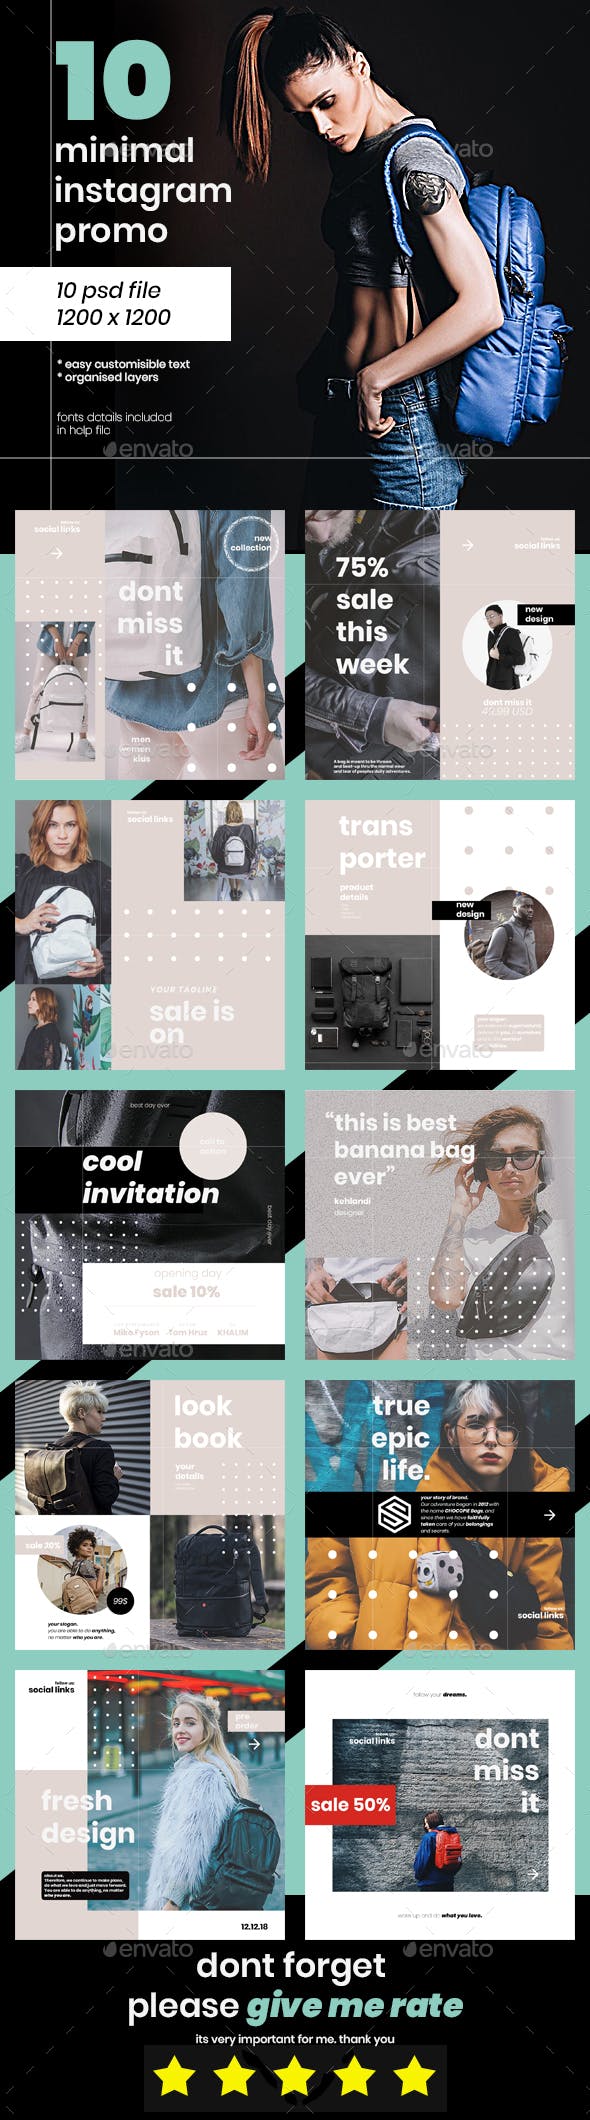 精美时尚的包包促销广告Instagram模板 Beautiful And Stylish Bags Promotional Ads Instagram Template插图